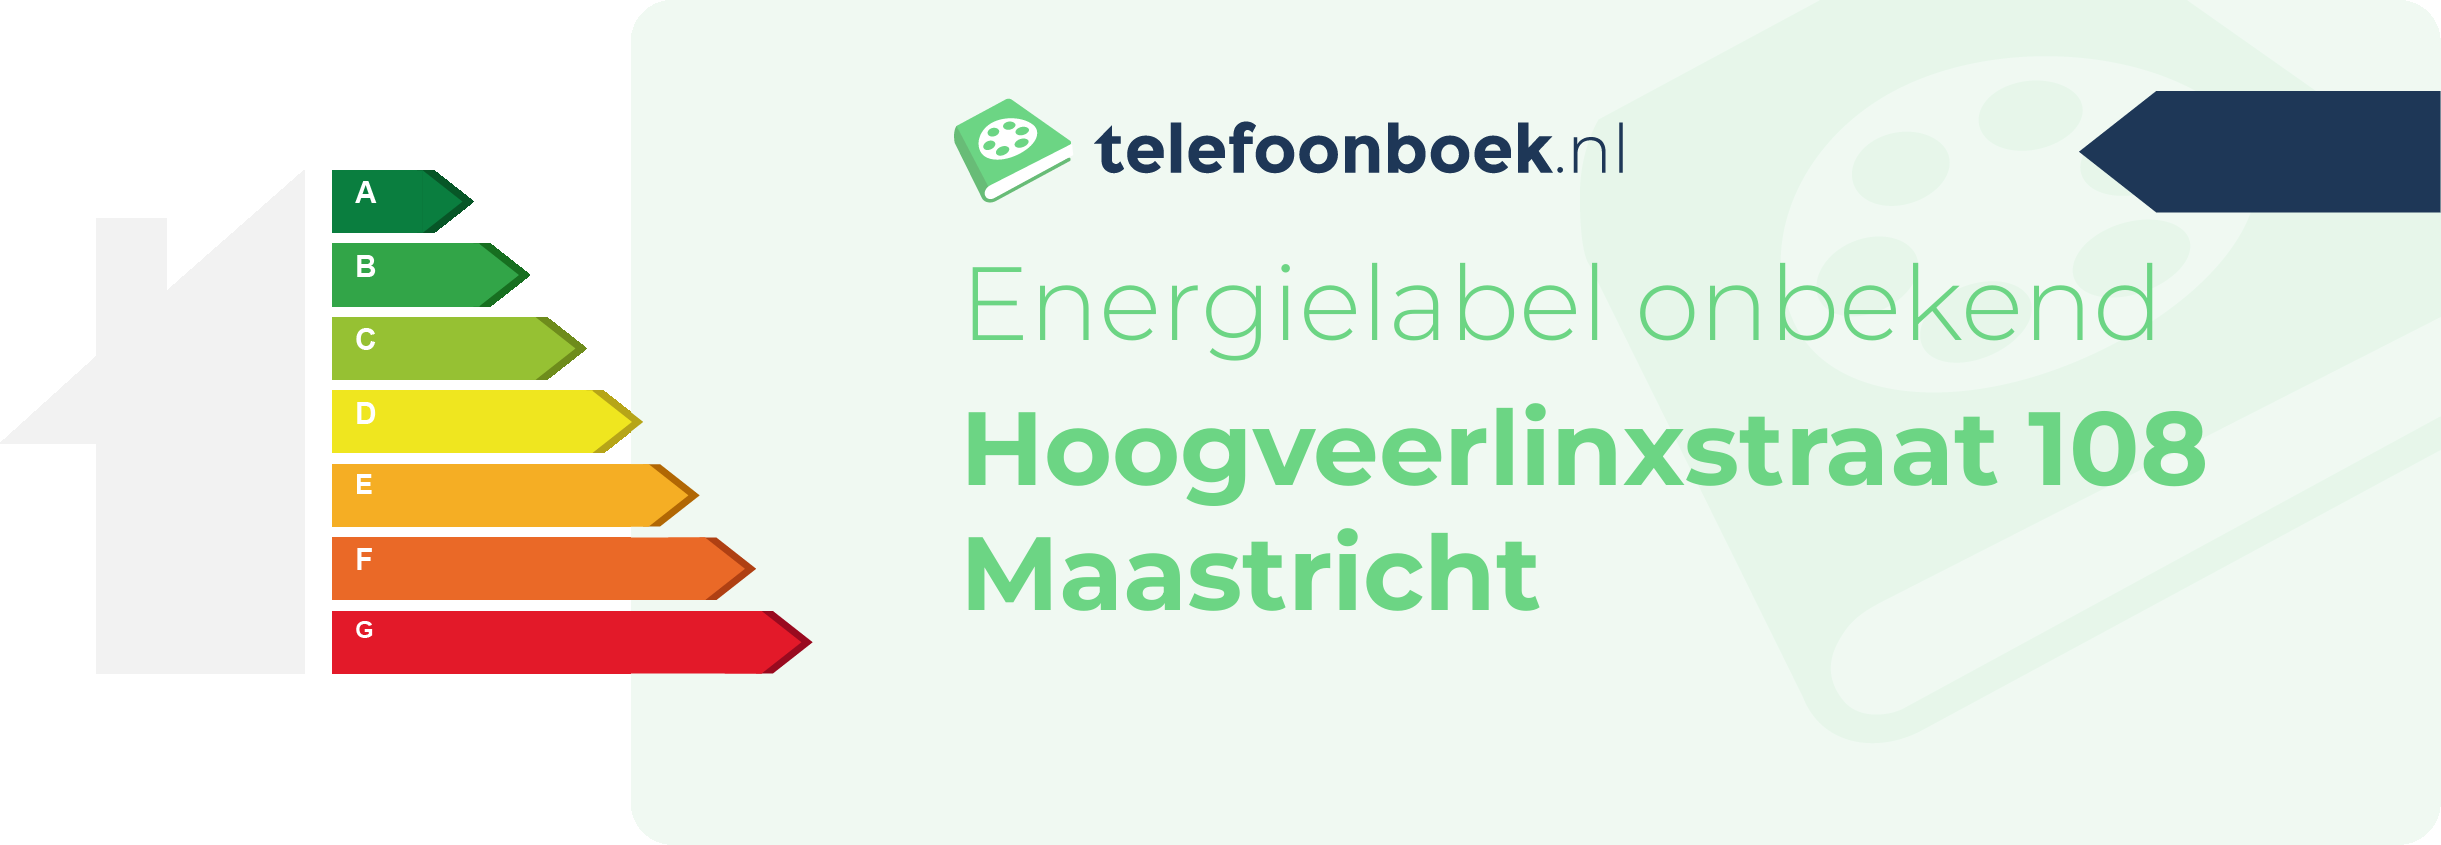 Energielabel Hoogveerlinxstraat 108 Maastricht